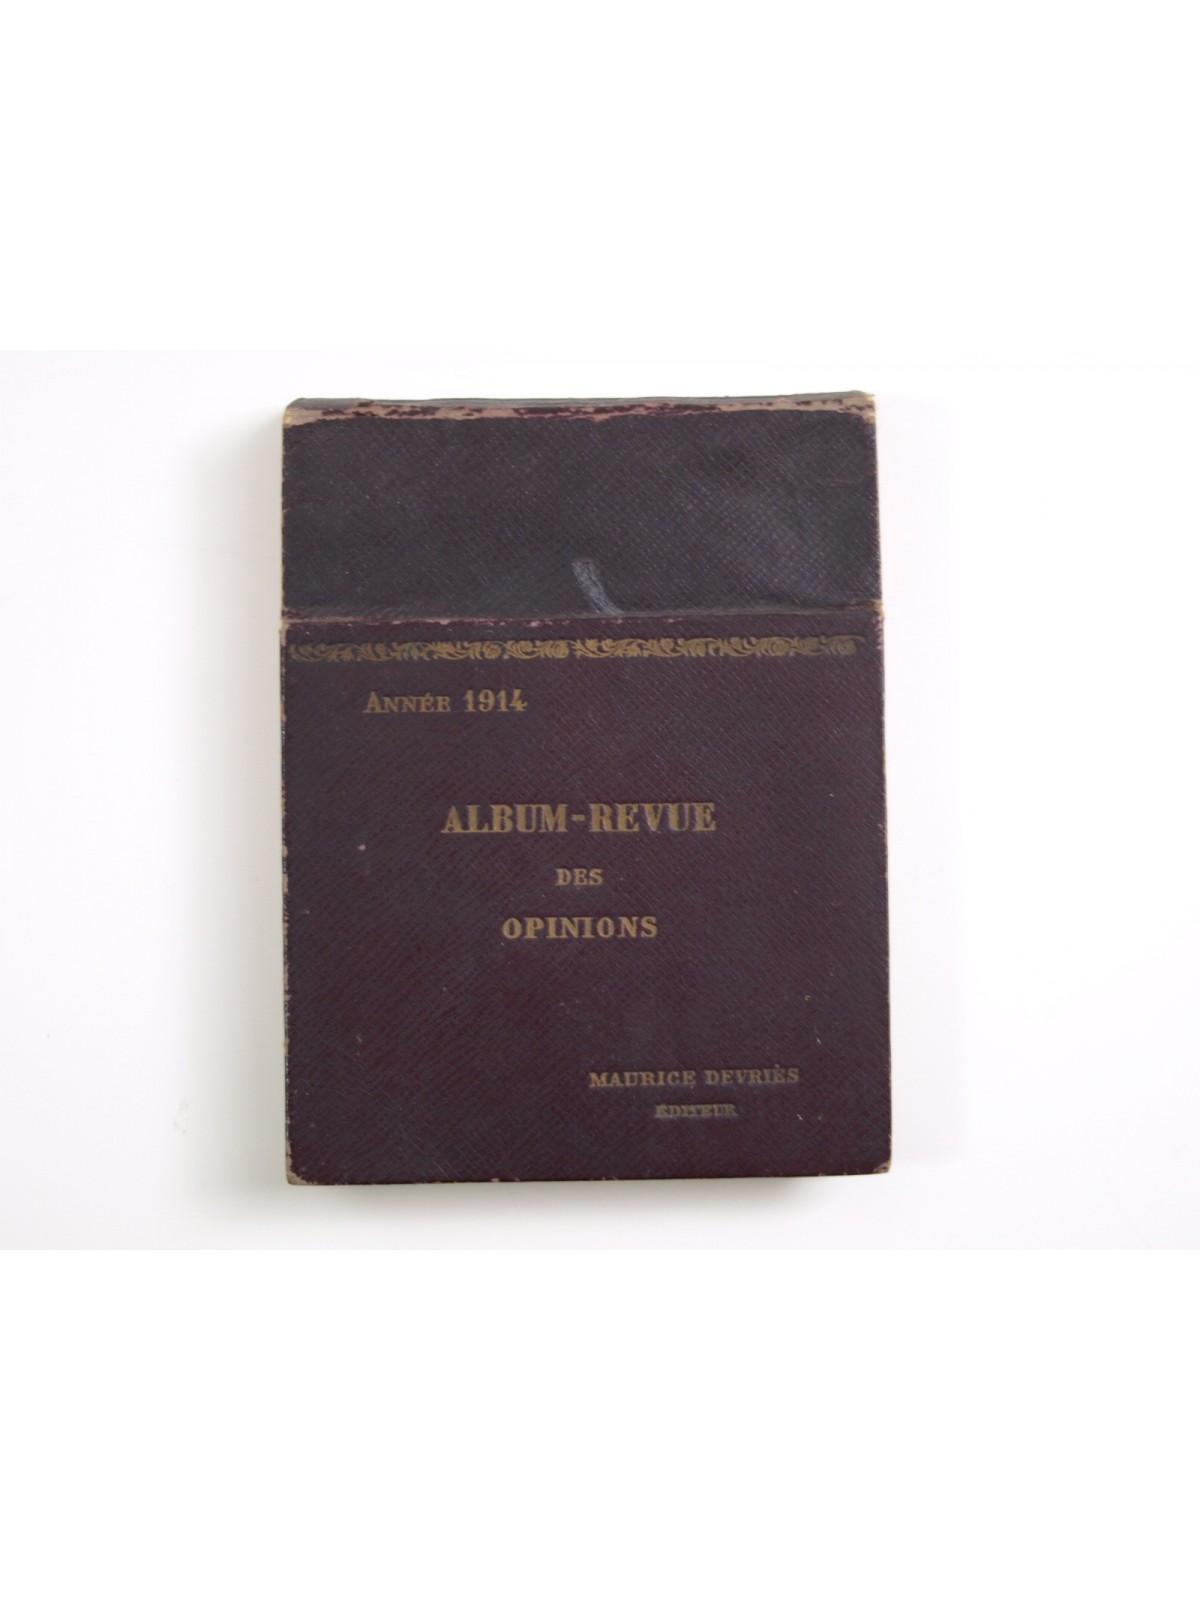 Album-Revue des Opinions. Agenda année 1914. Complet